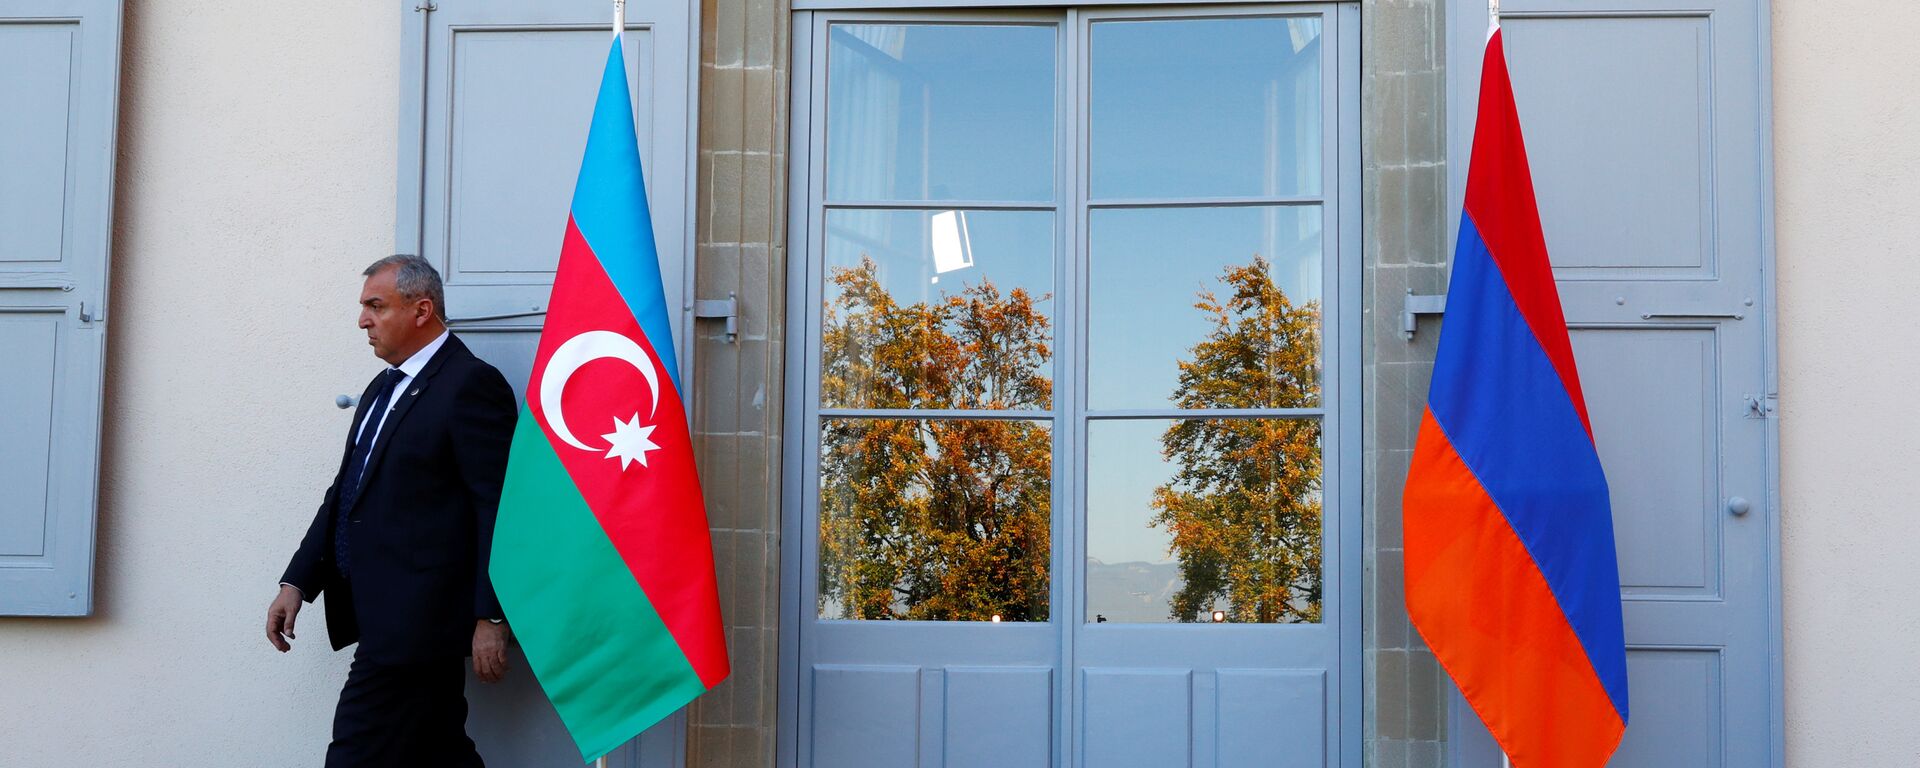 Охранник проходит мимо азербайджанского (слева) и армянского флага в Женеве, фото из архива - Sputnik Азербайджан, 1920, 03.12.2021